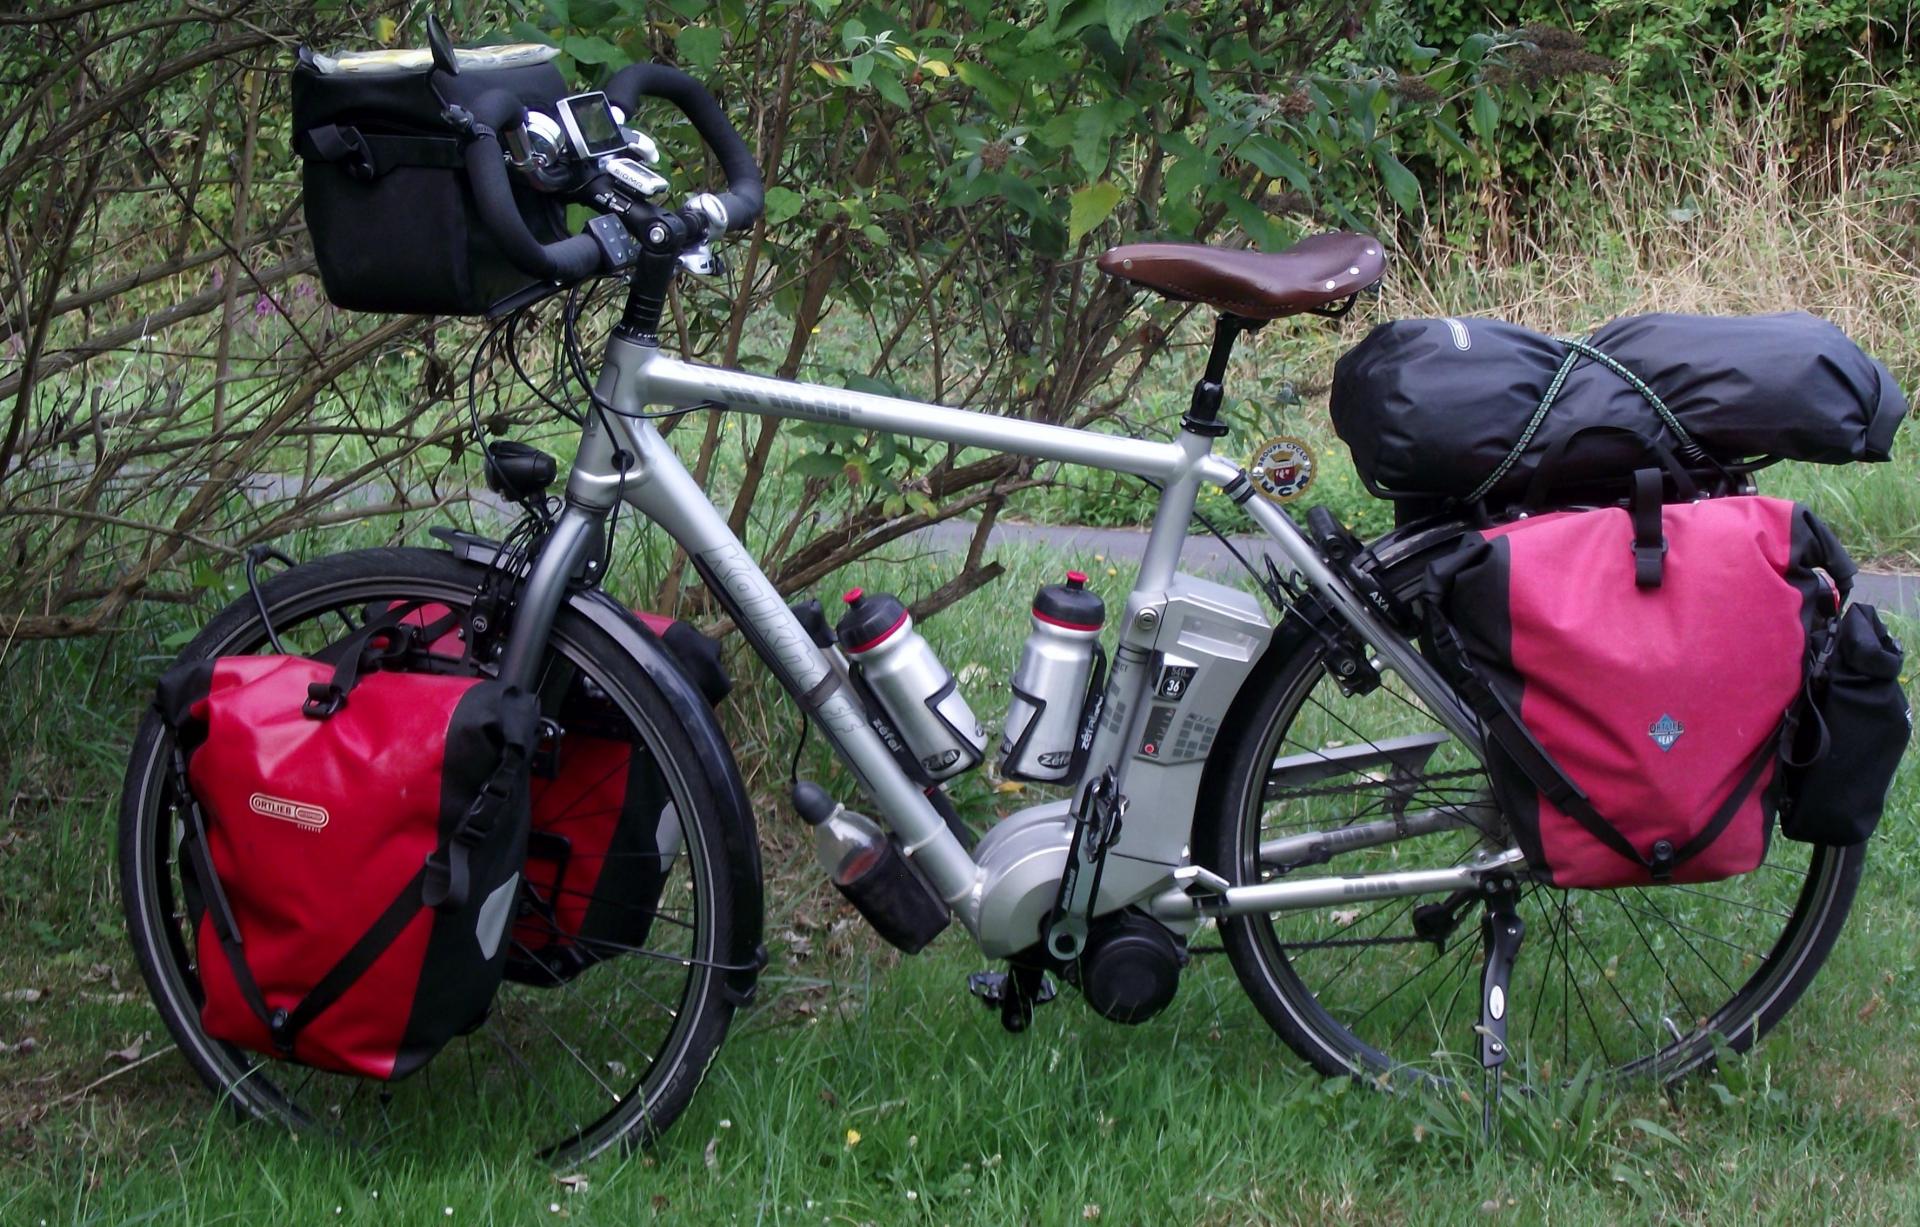 Lire la suite à propos de l’article Les bicyclettes, les vélos ou les bécanes peuplent l’été